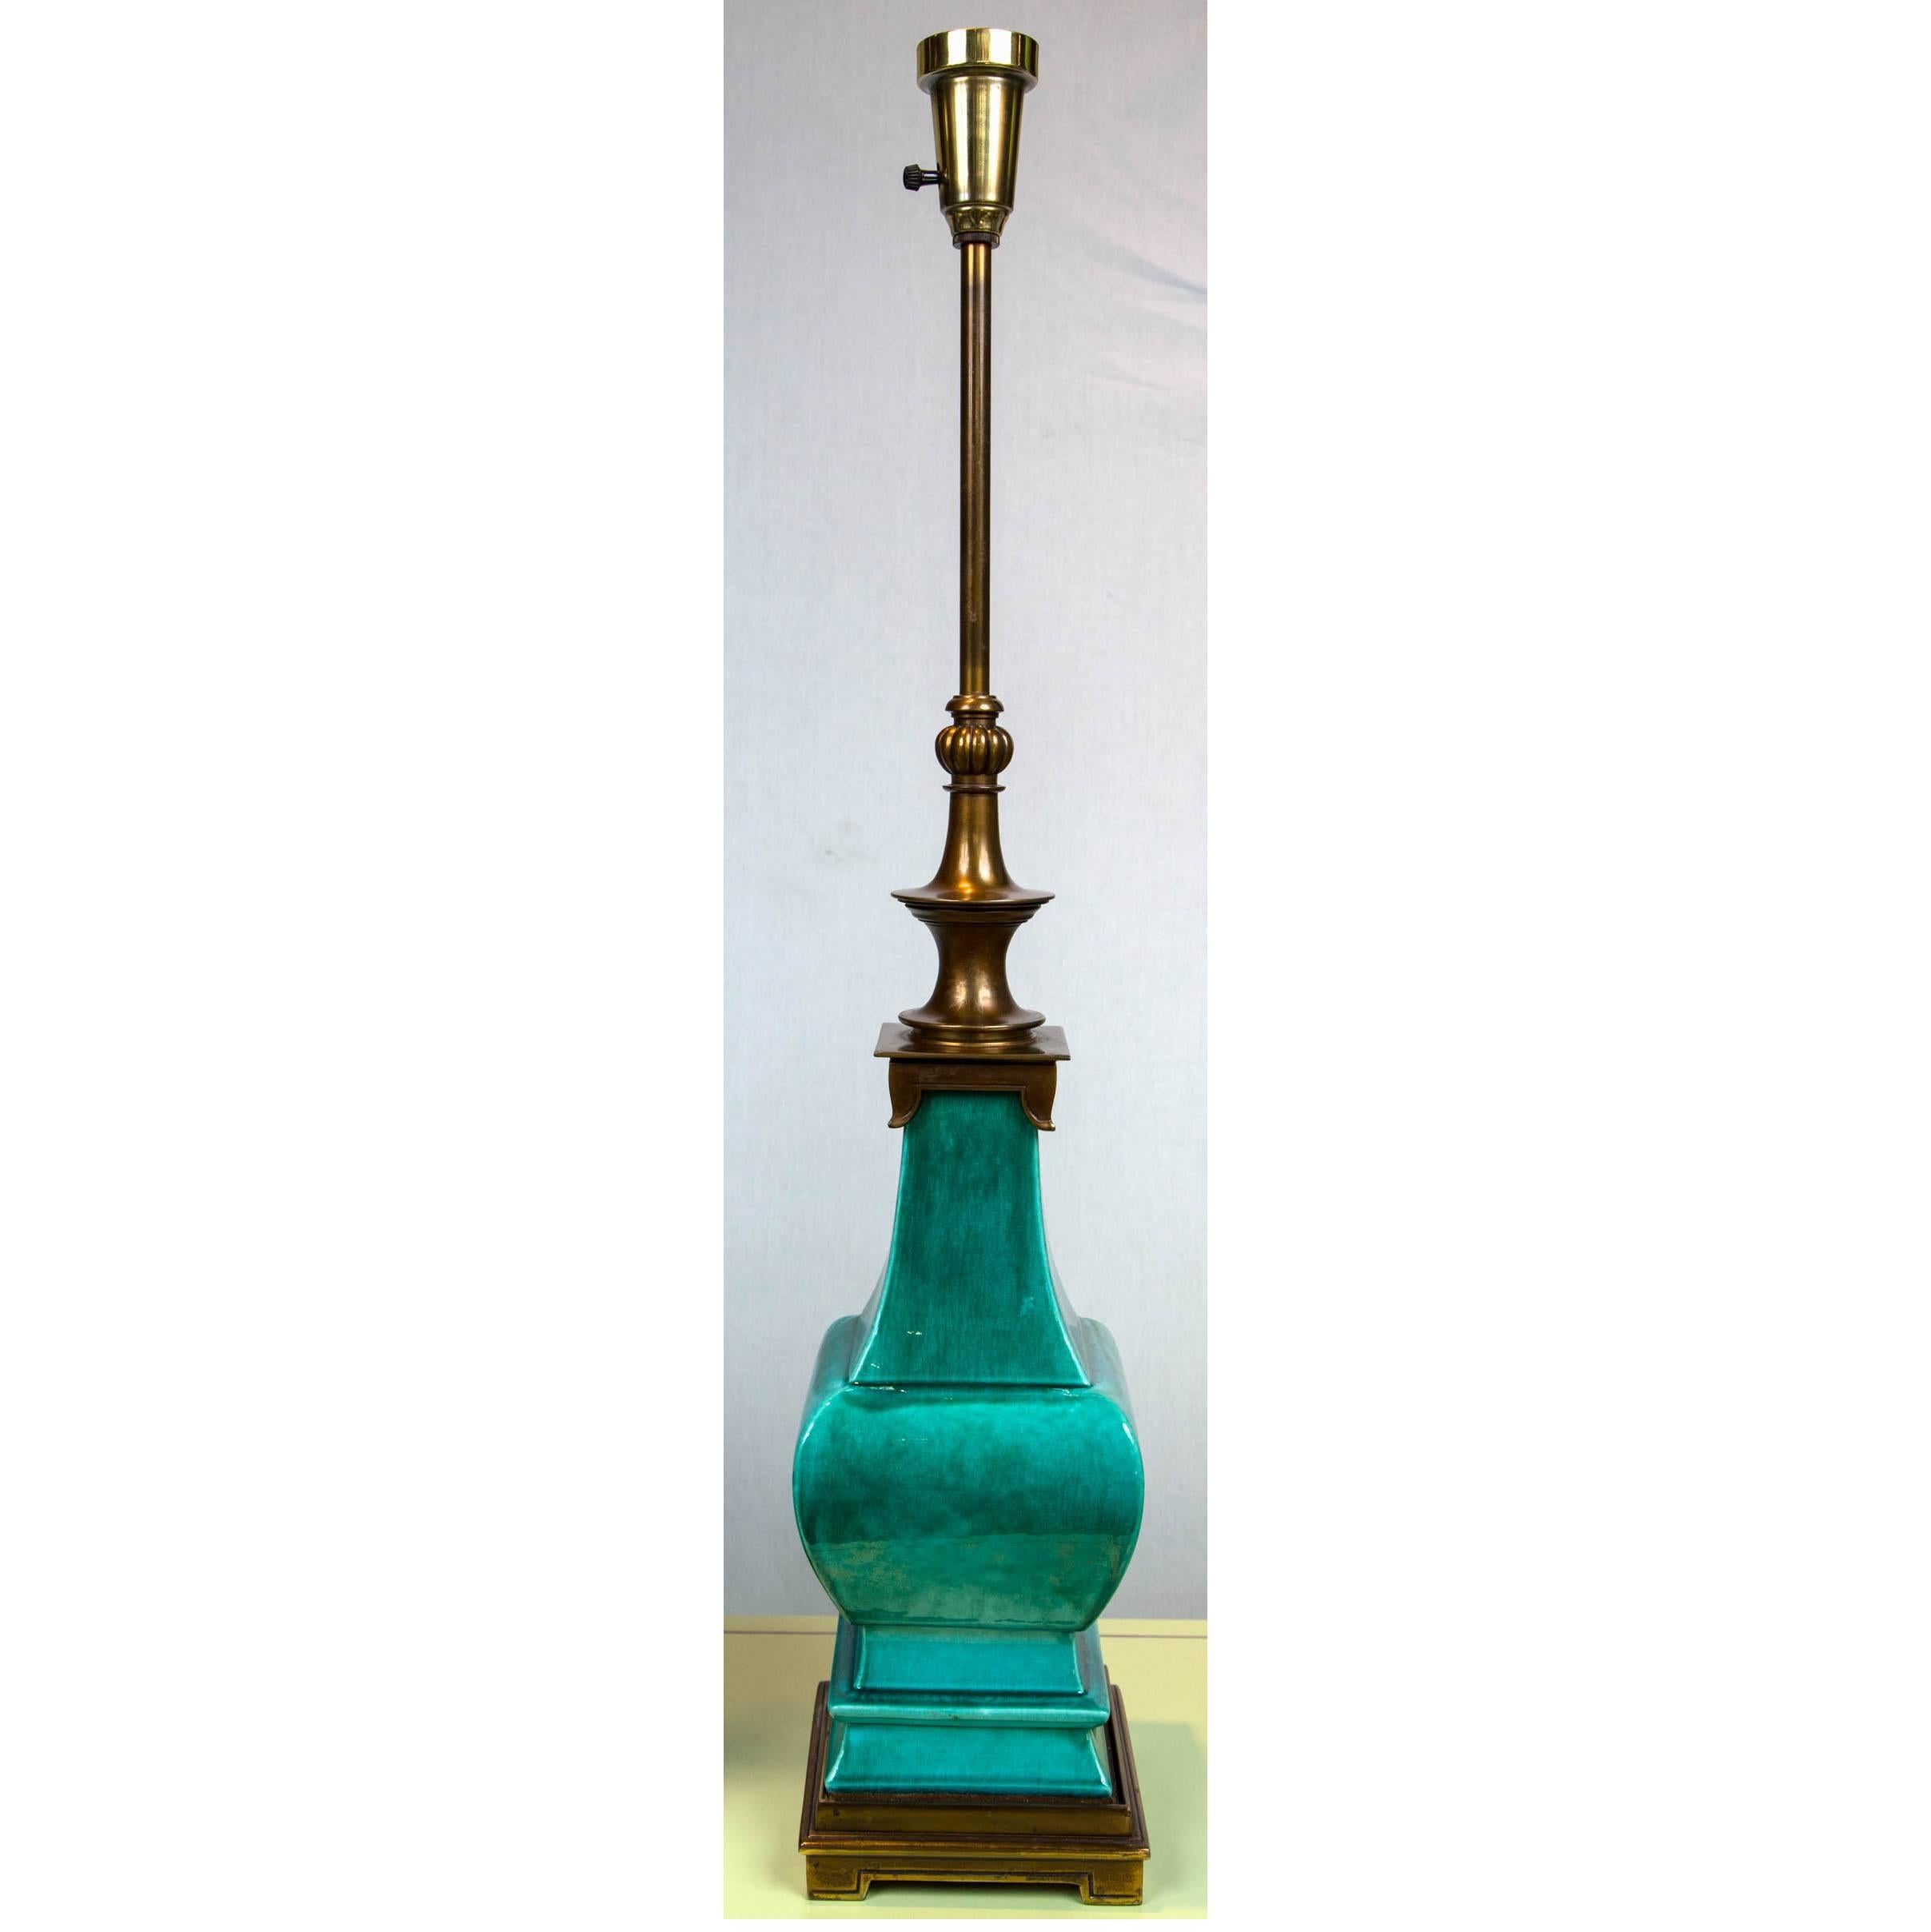 Une glaçure verte luxueuse sur ces lampes vintage de style pagode de Stiffel. Entreprise de lampes haut de gamme.